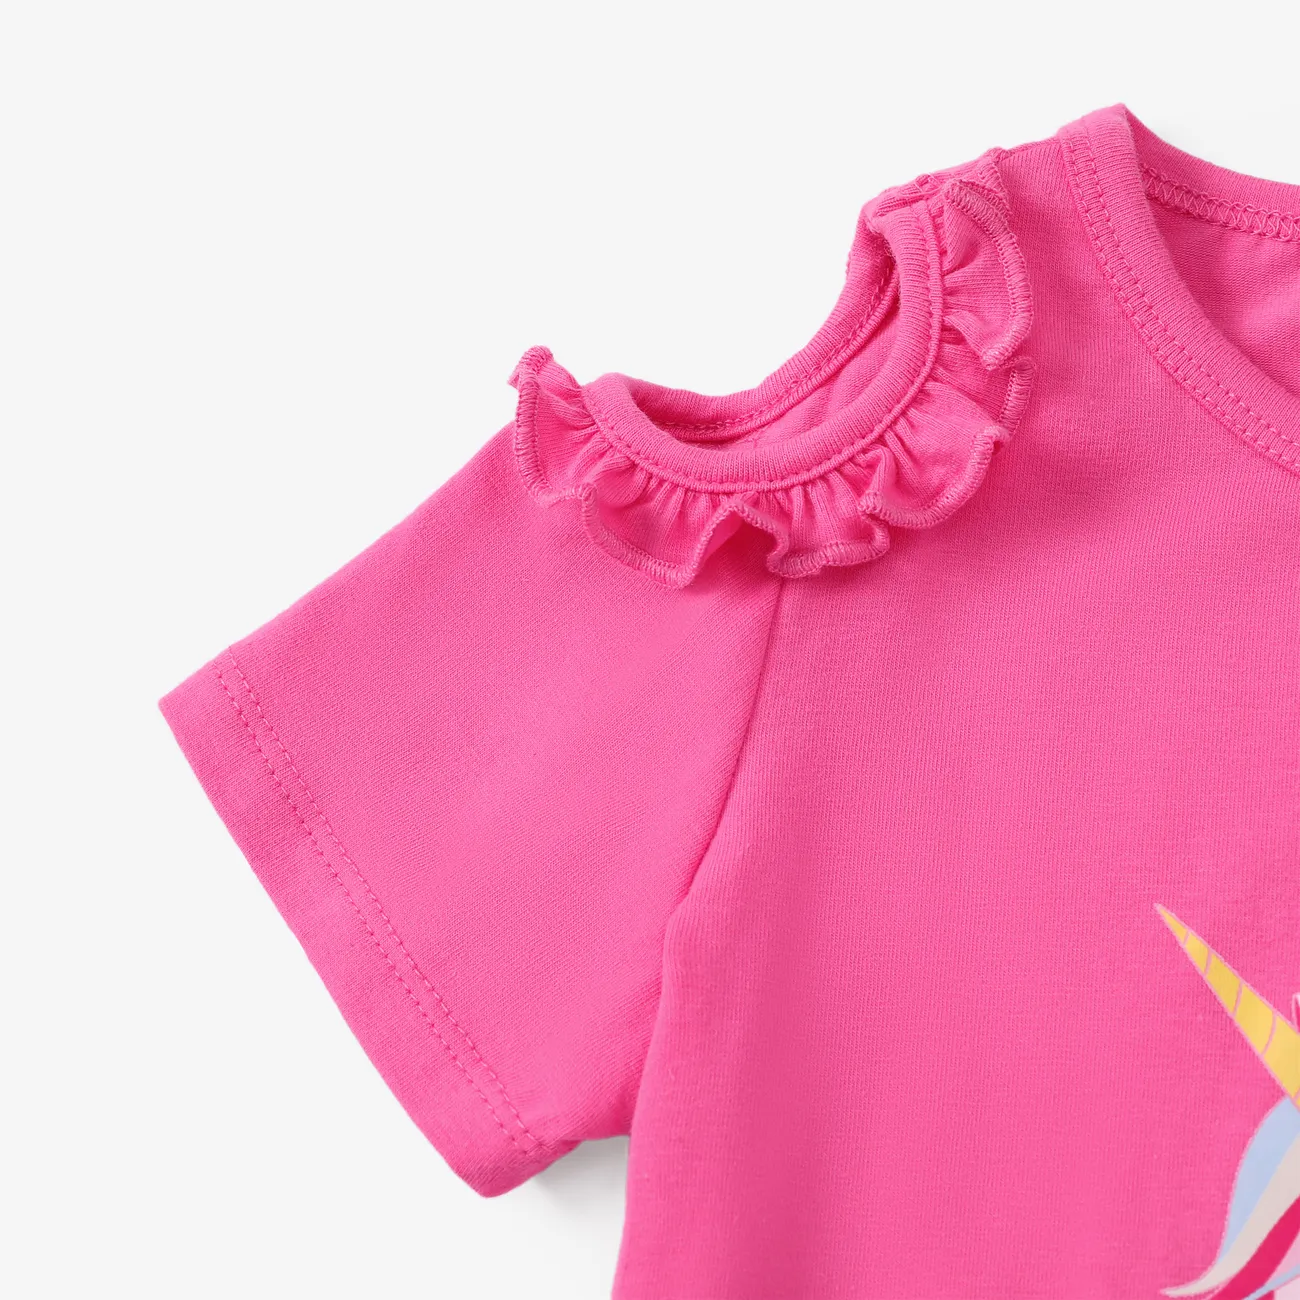 蹣跚學步/小女孩 2 件裝甜美獨角獸印花荷葉邊 T 恤和緊身褲套裝 深粉色 big image 1